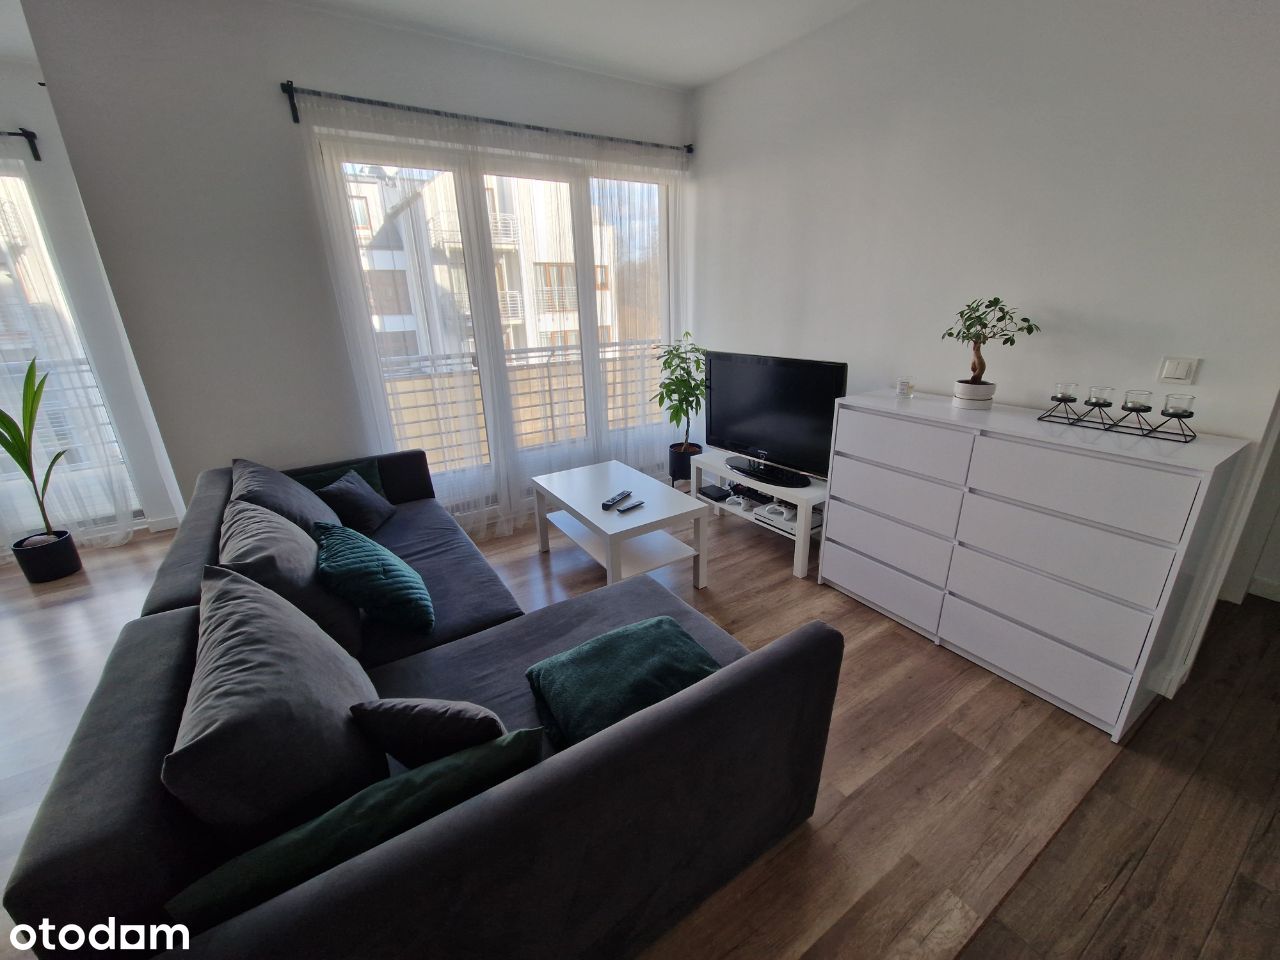 Mieszkanie 2 pokoje, 47m2, Gdańsk Płd, komfortowe